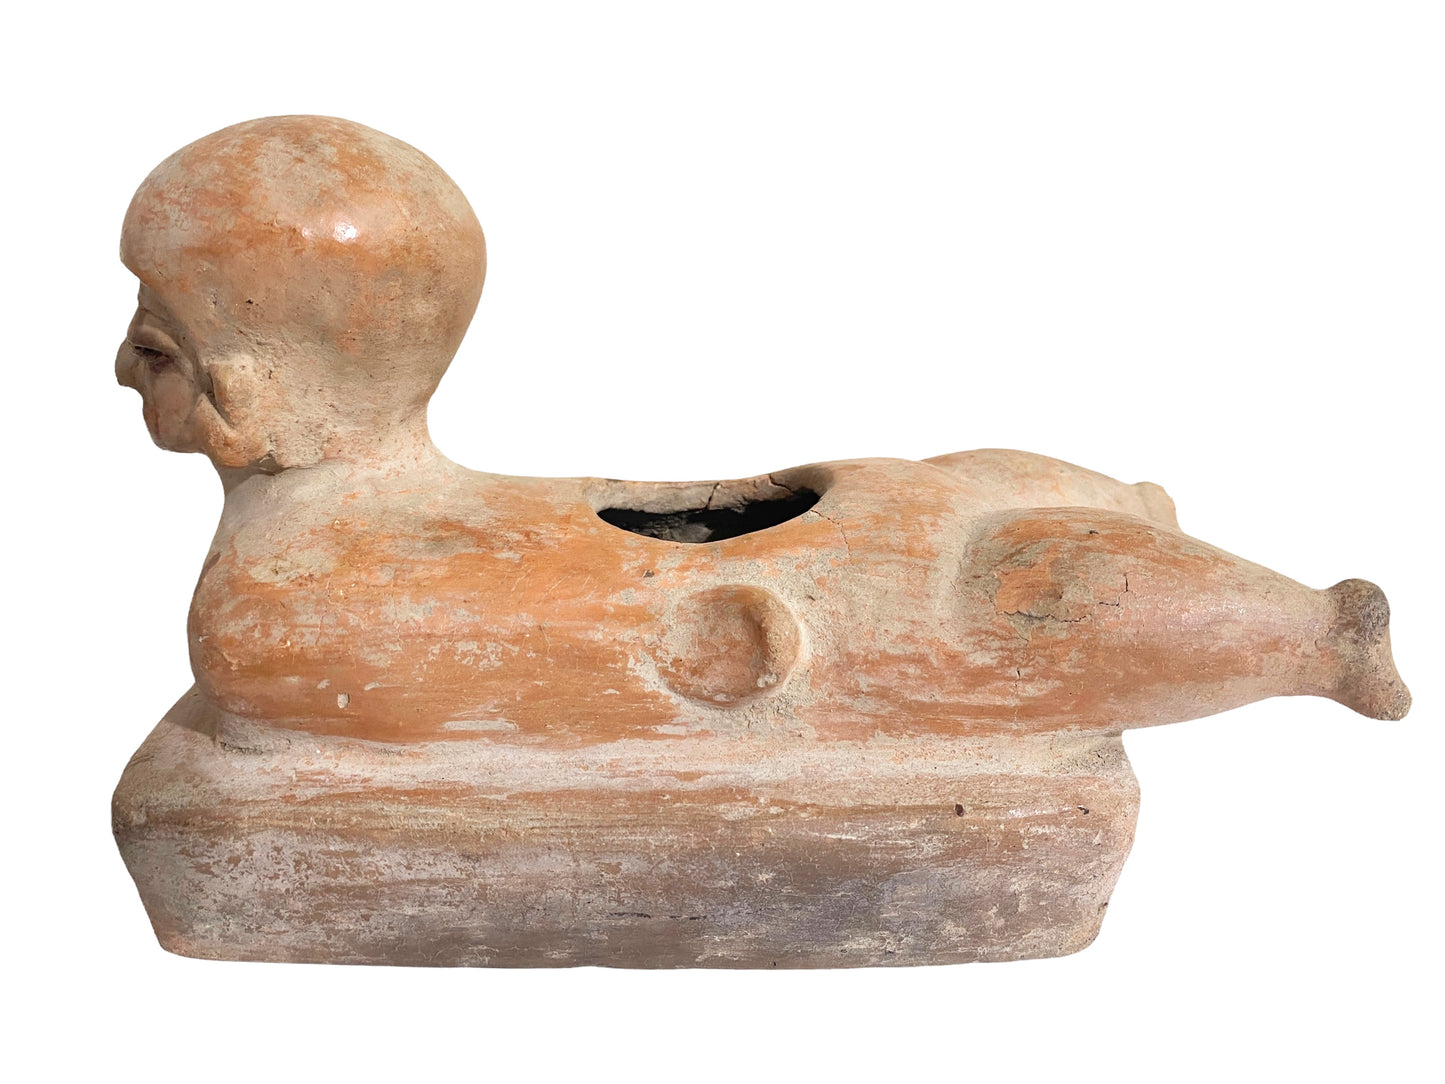 # 230 Rare Pre-Columbian - Jama Coaque Male Figure W/Helmet